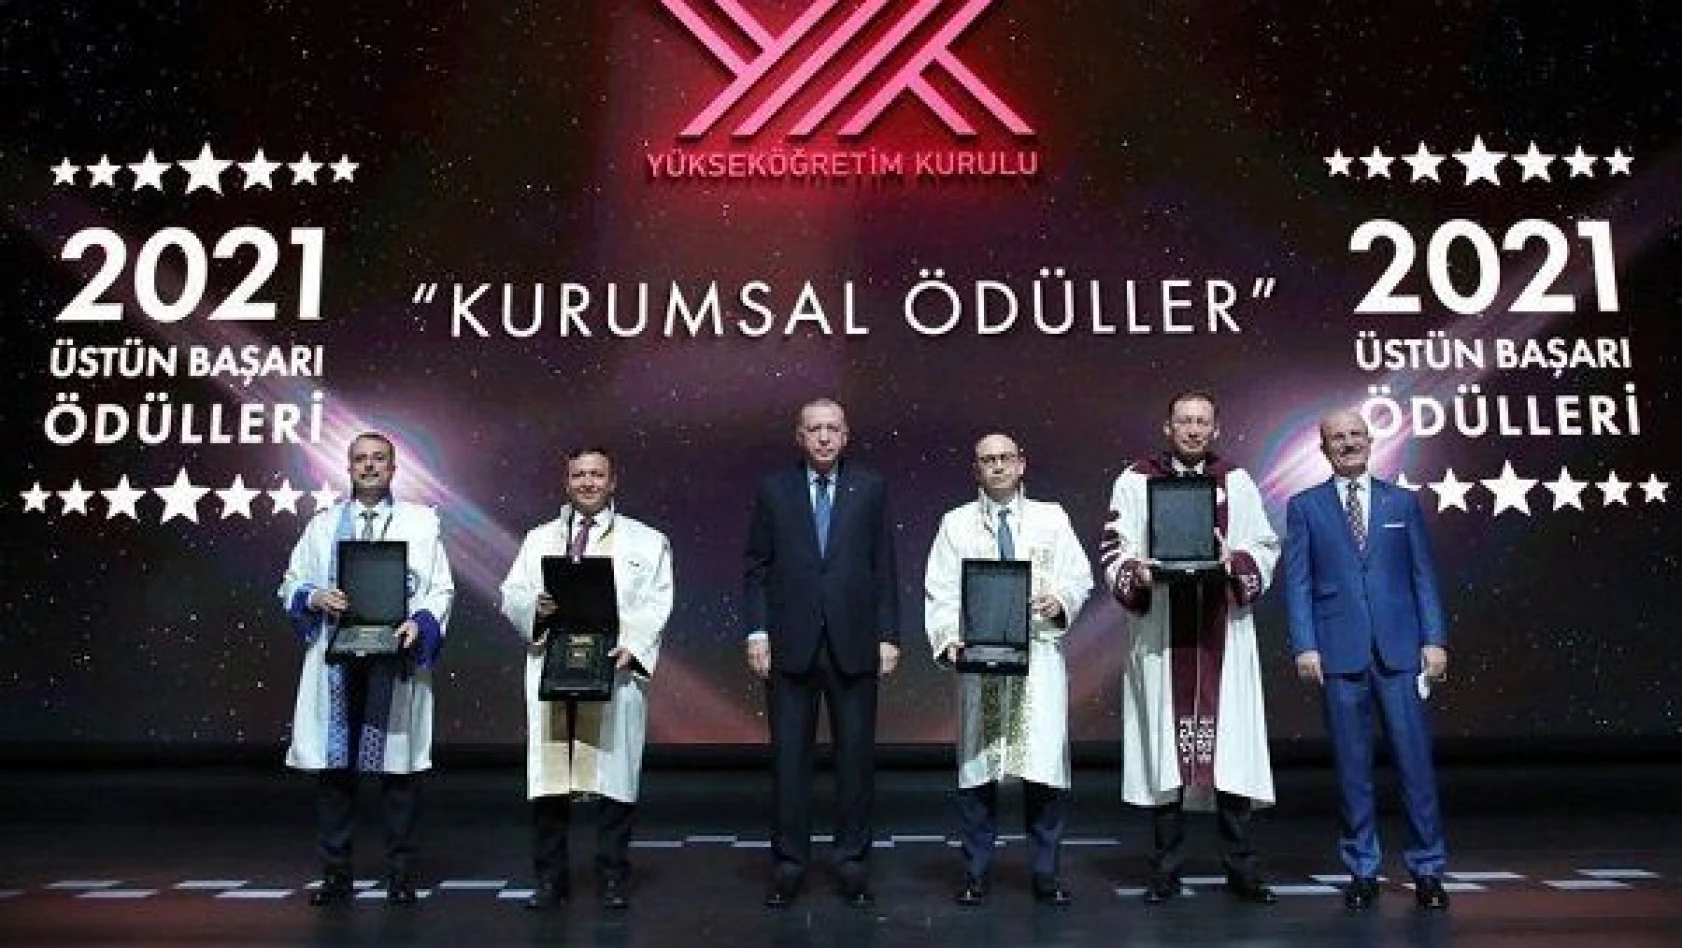 TURKOVAC'ı geliştiren ERÜ'ye Cumhurbaşkanı Erdoğan'dan ödül